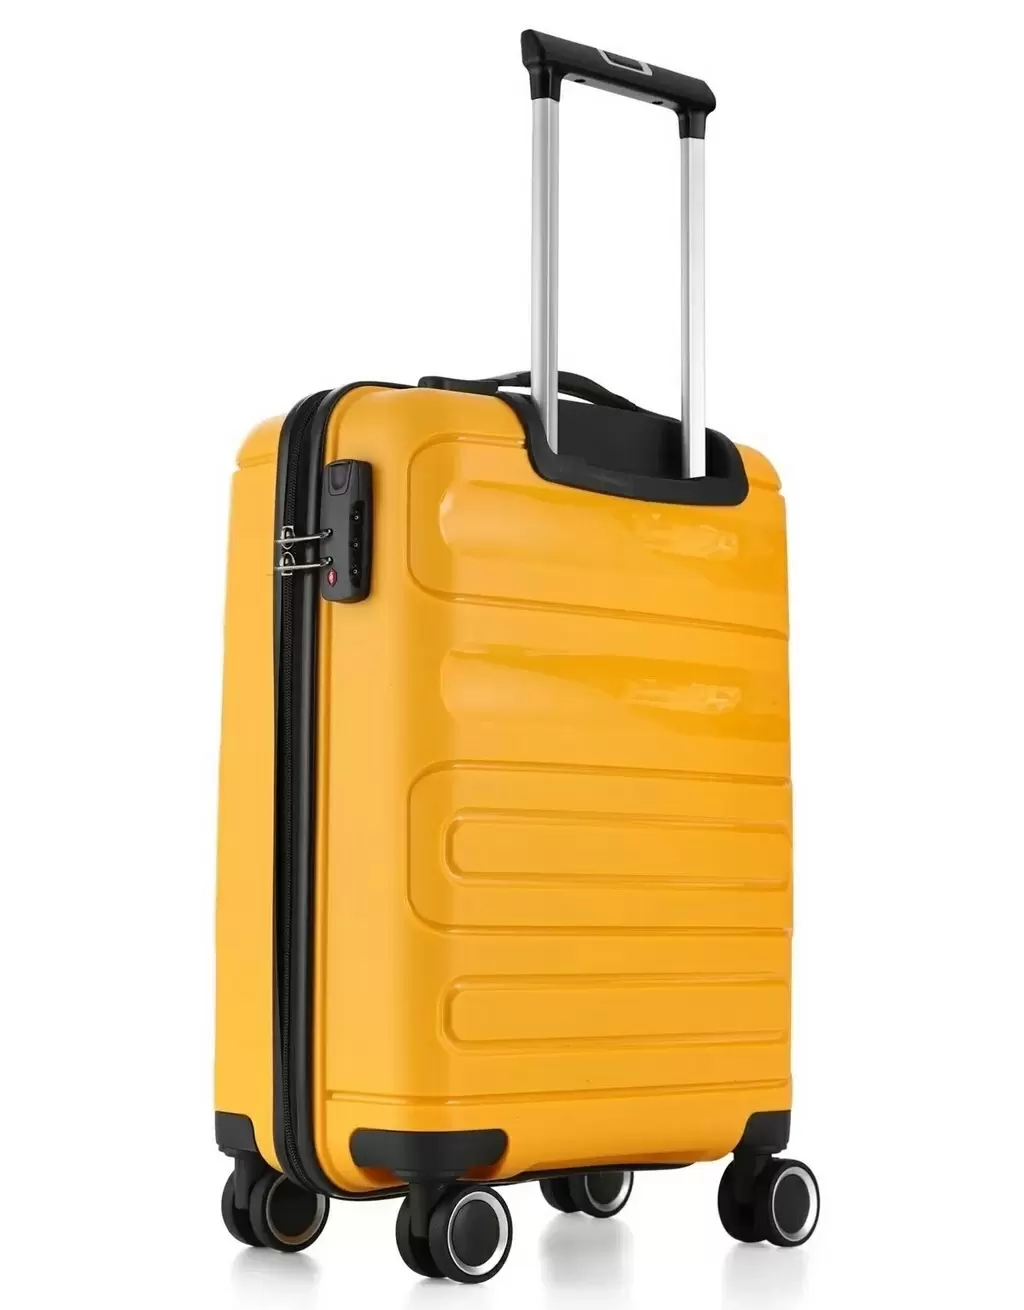 Комплект чемоданов CCS 5225 Set, желтый